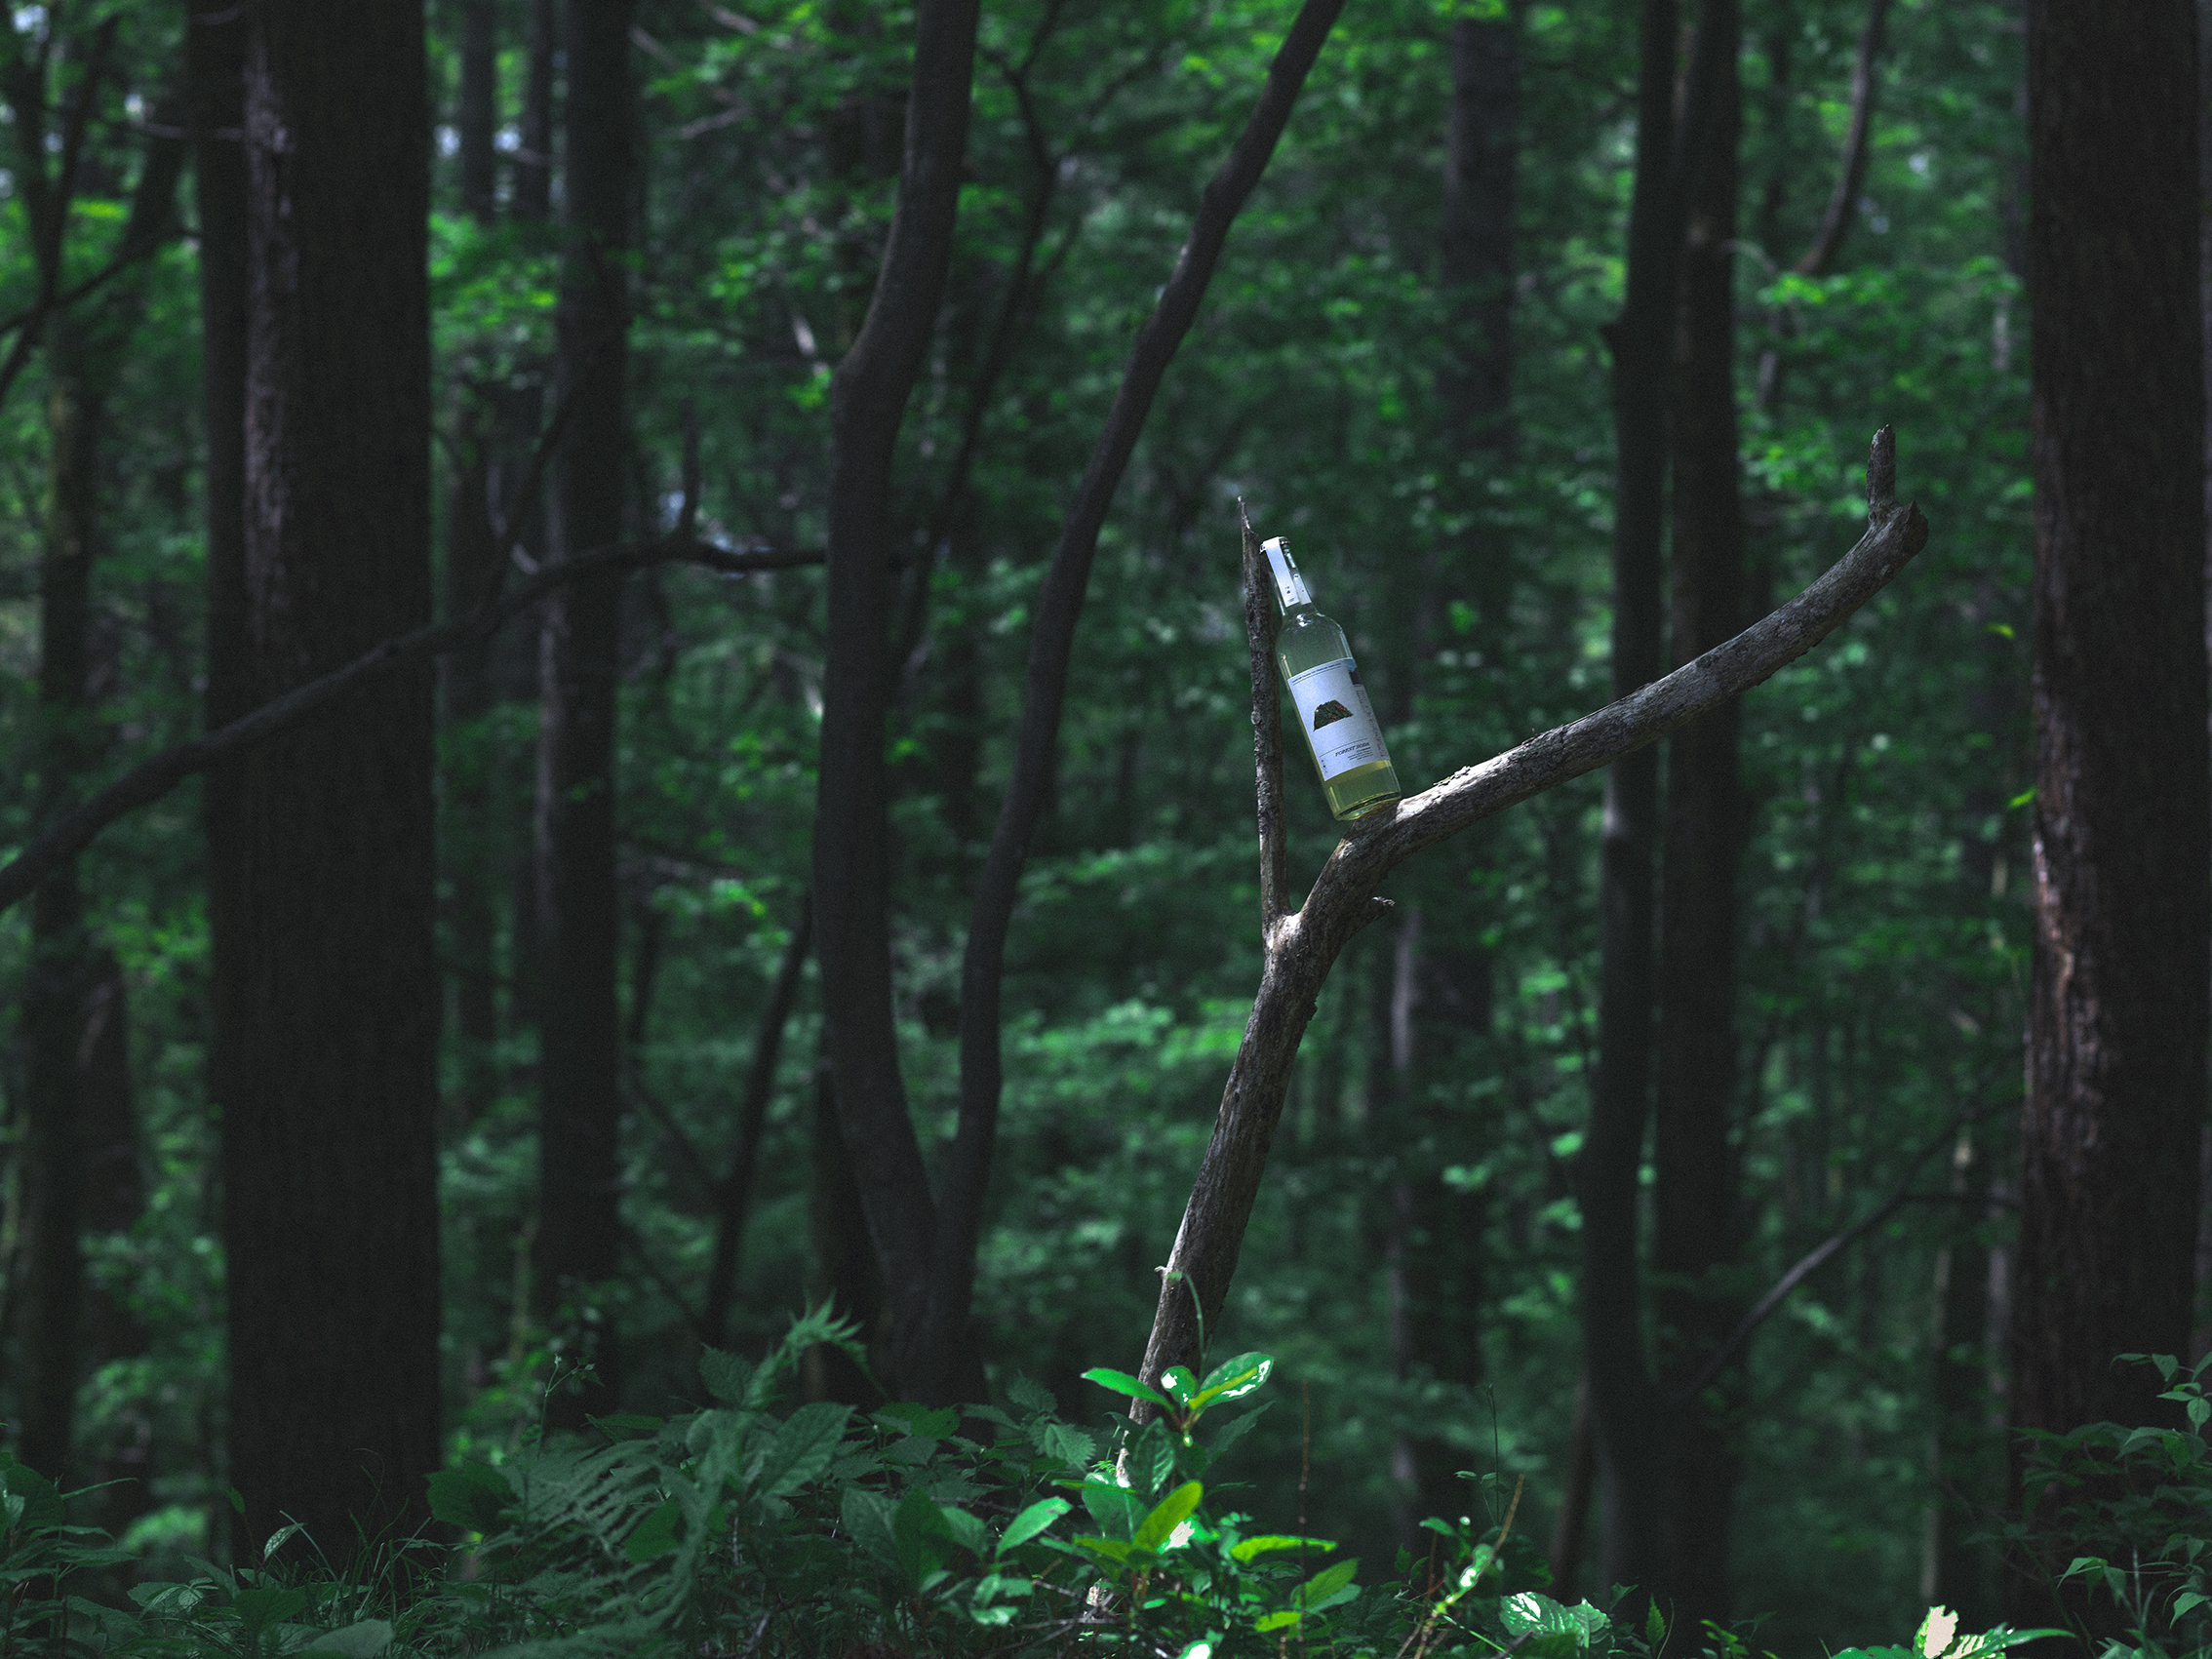 “木を飲む”という新体験 、木の食用化を目指すブランド「木(食)人」ローンチのサブ画像3